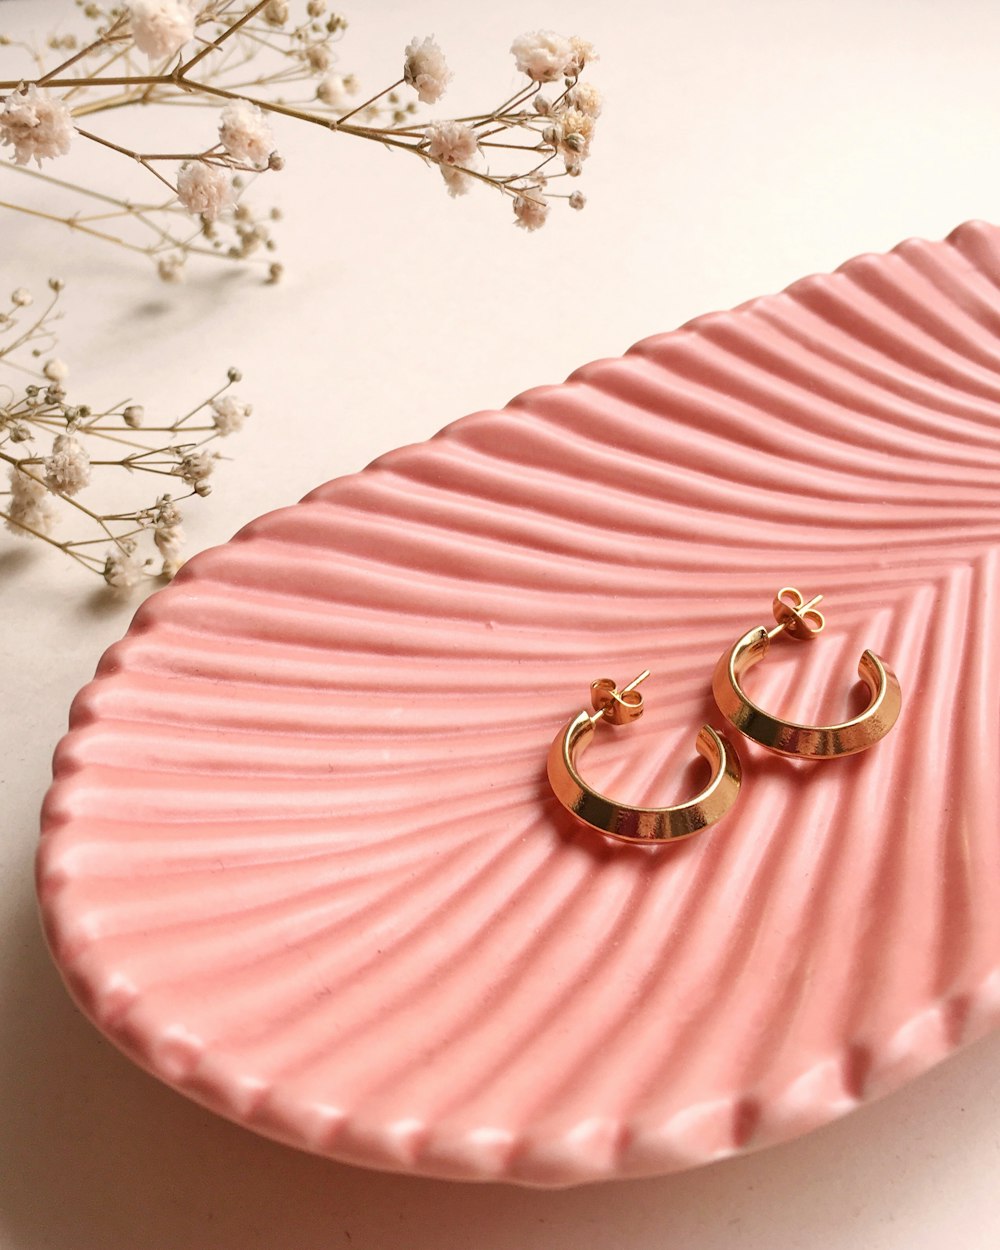 Bagues en or et argent sur textile rayé rose et blanc